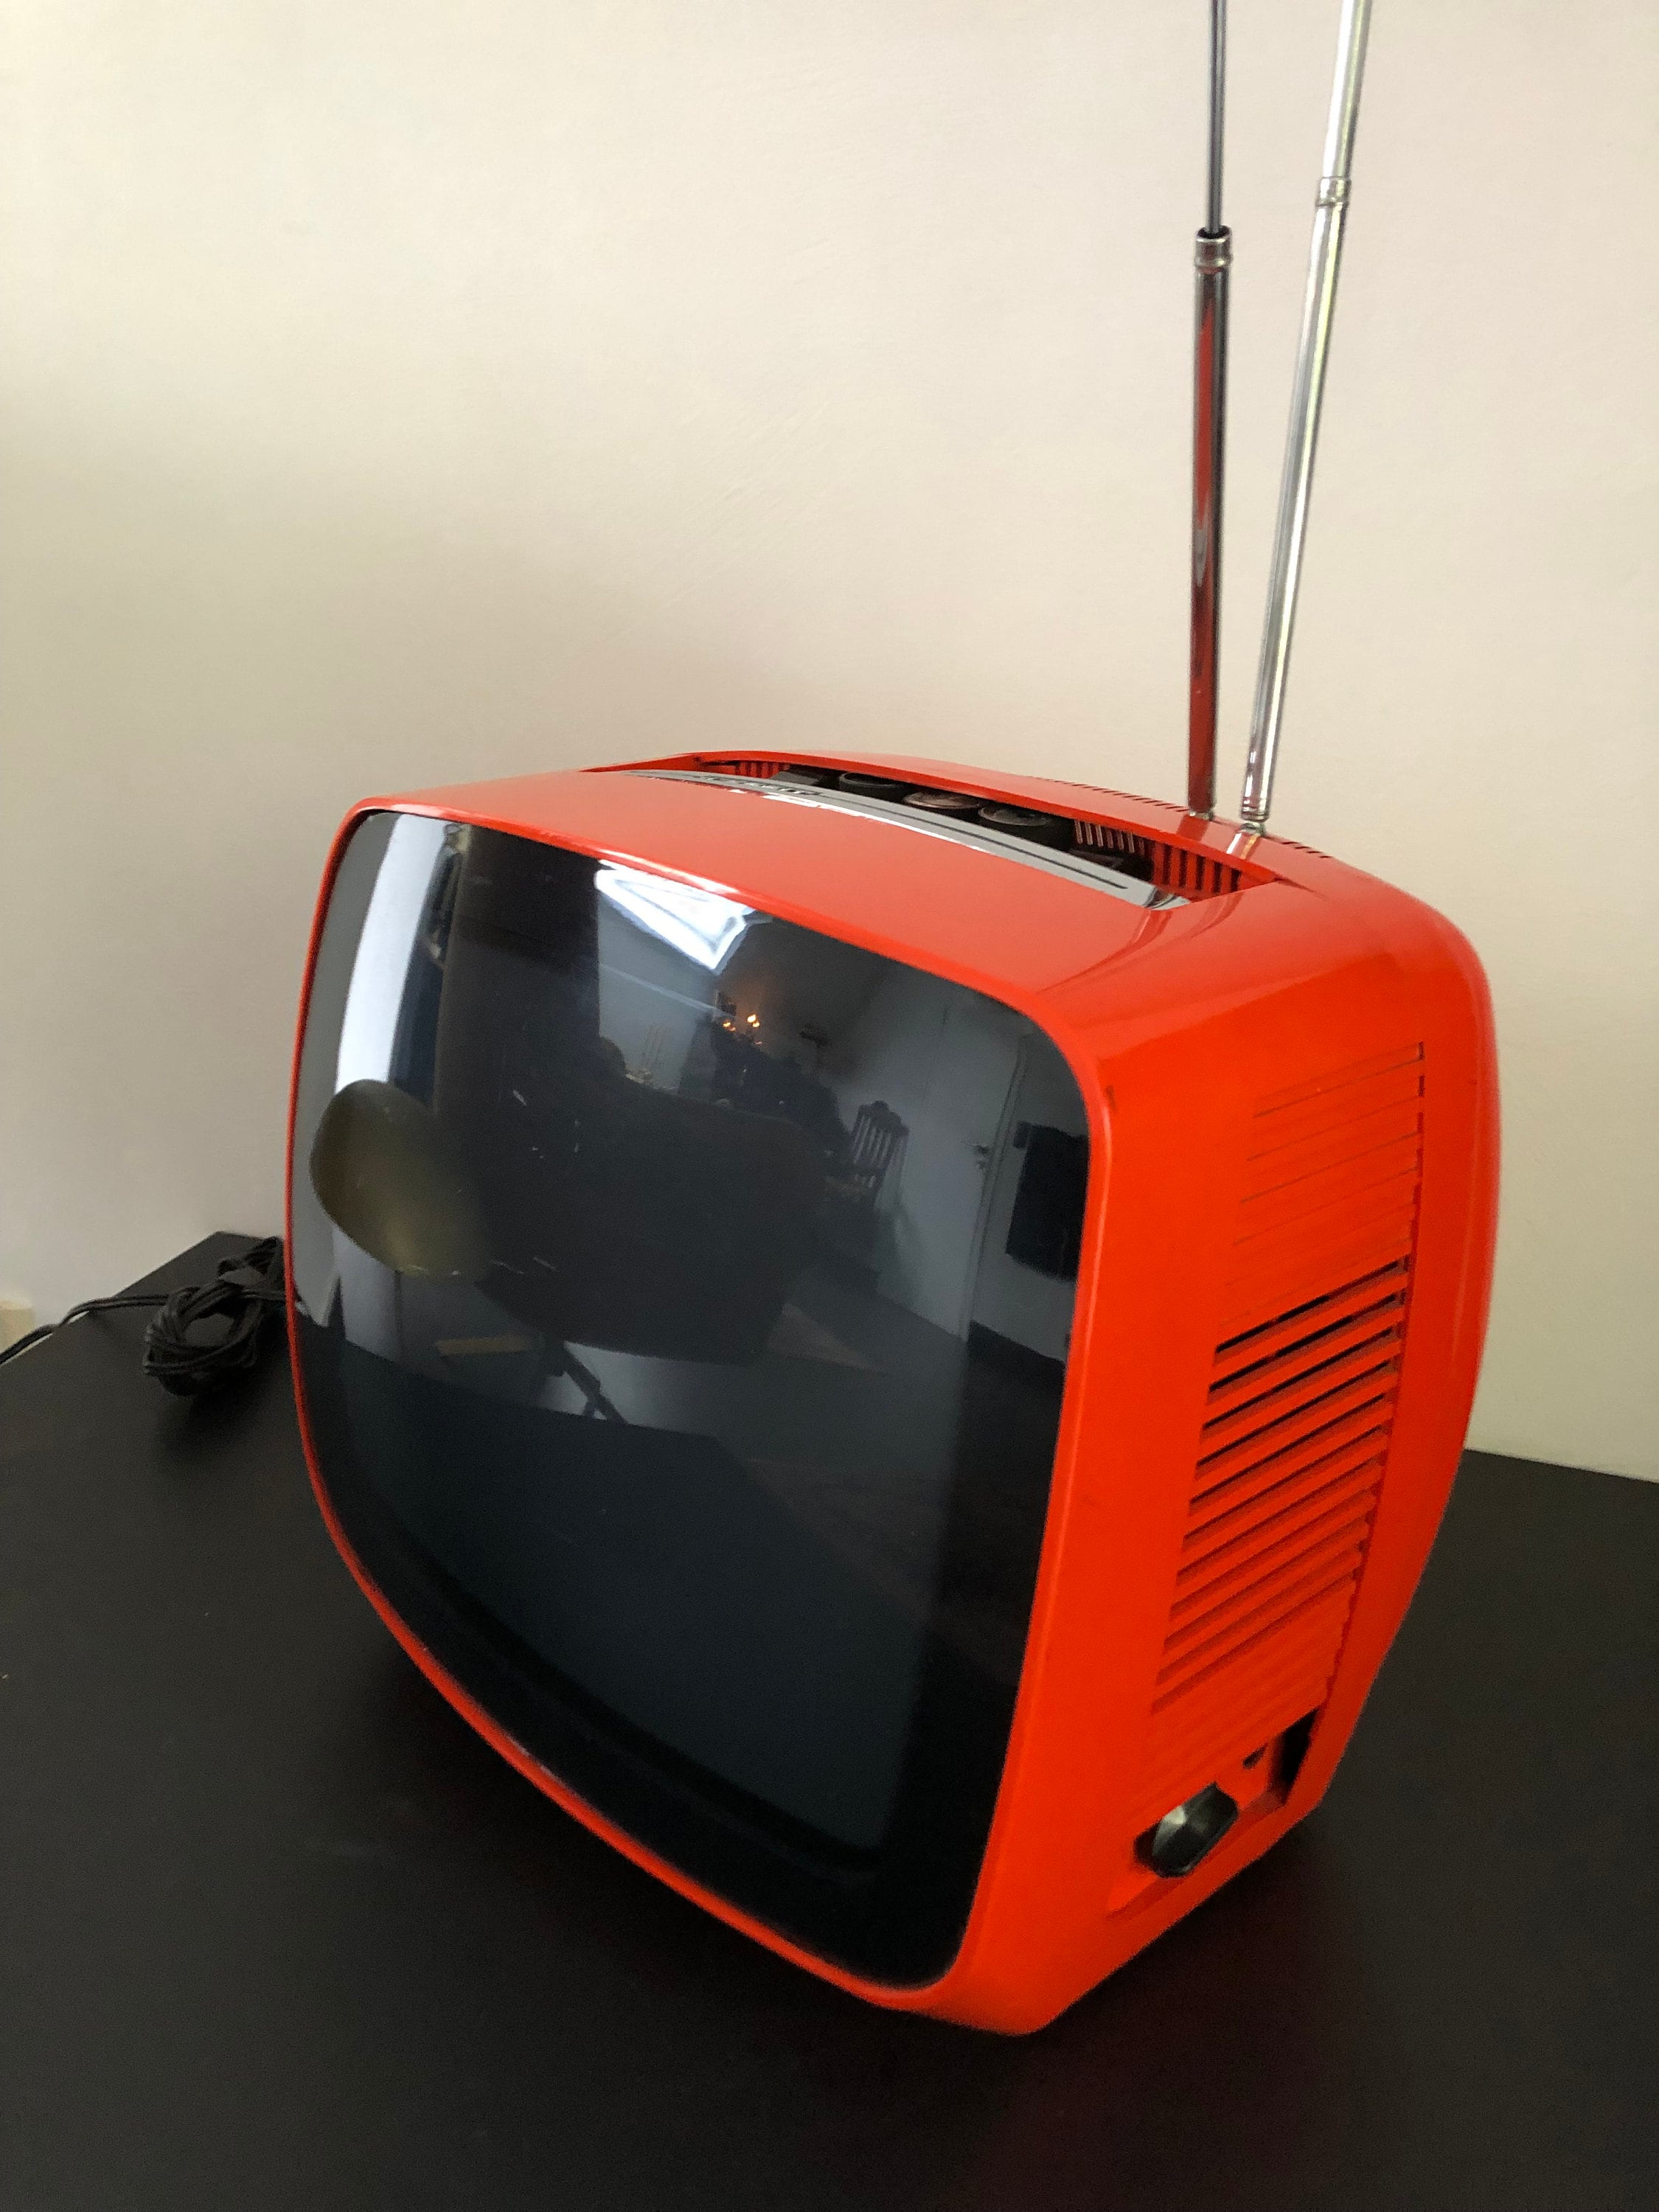 Vintage Small Roadstar TV / Portable TV / Small Tv / Roadstar Tv / Black  And White TV / Plastic TV / Retro Tv / Camping Tv / Mini TV / Japon / 90s -   France